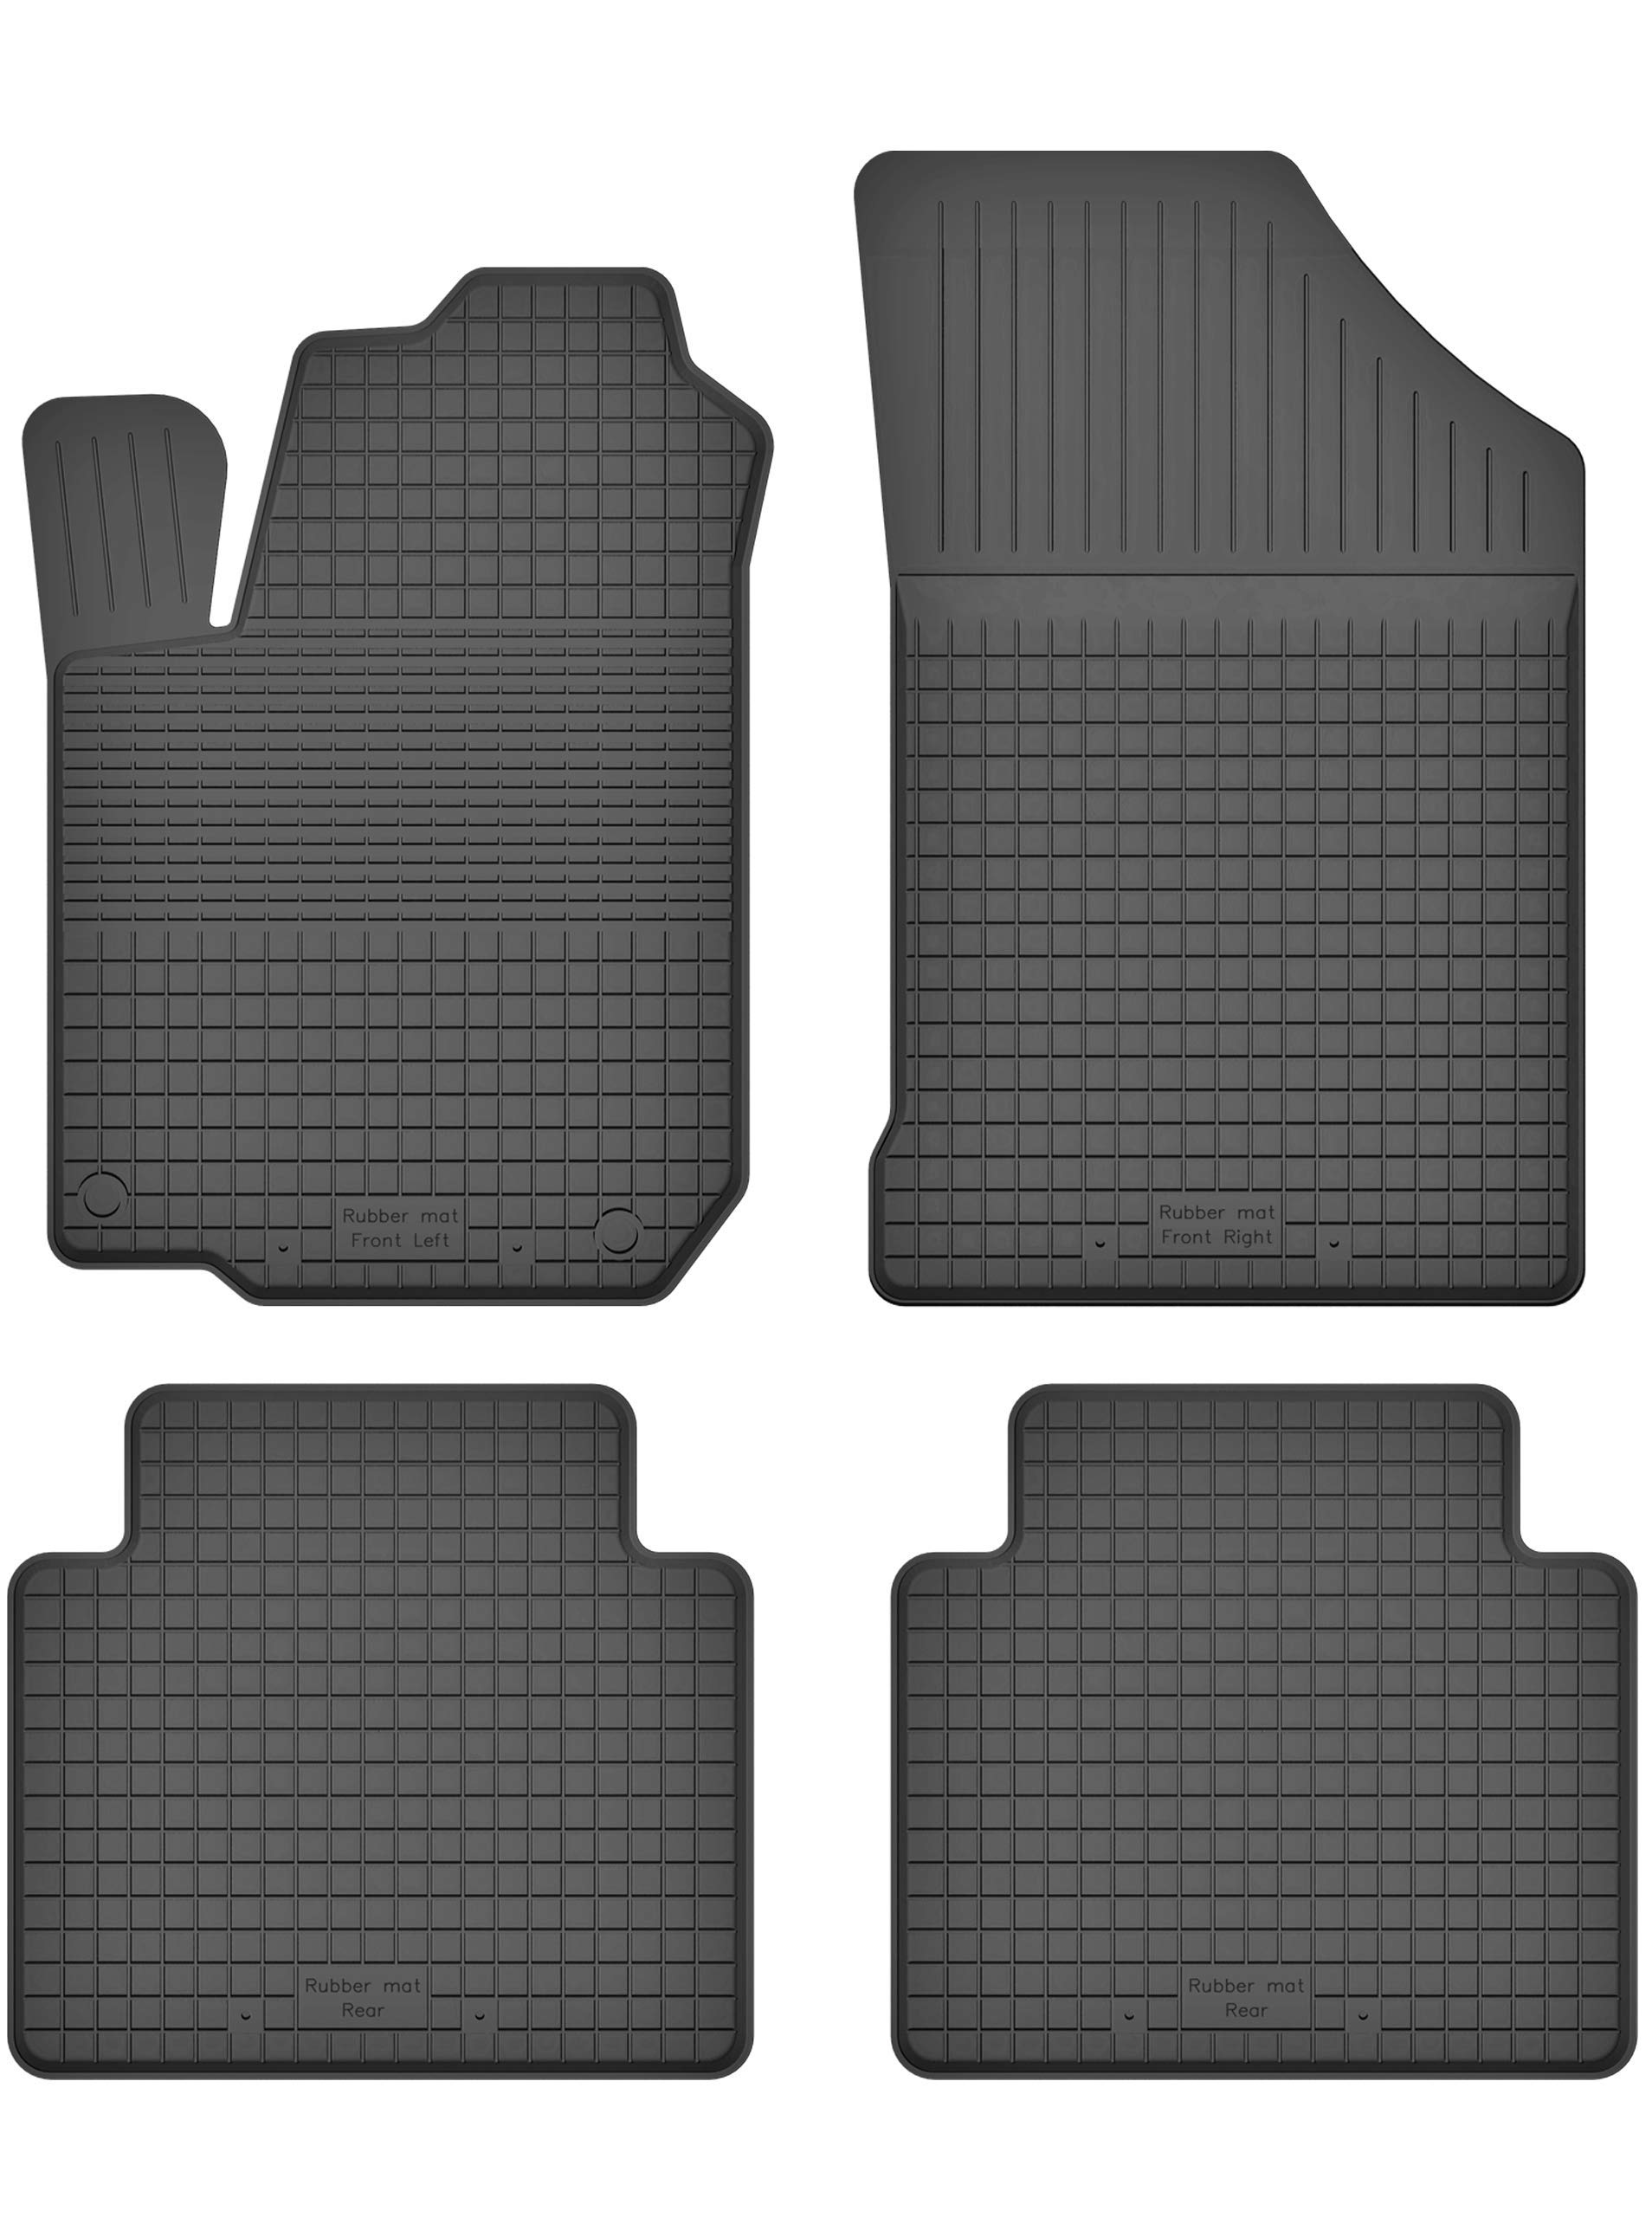 Gummimatten Fußmatten 1.5 cm Rand kompatibel mit Renault KOLEOS (Bj. ab 2008) ideal angepasst 4 -Teile EIN Set von KO-RUBBERMAT